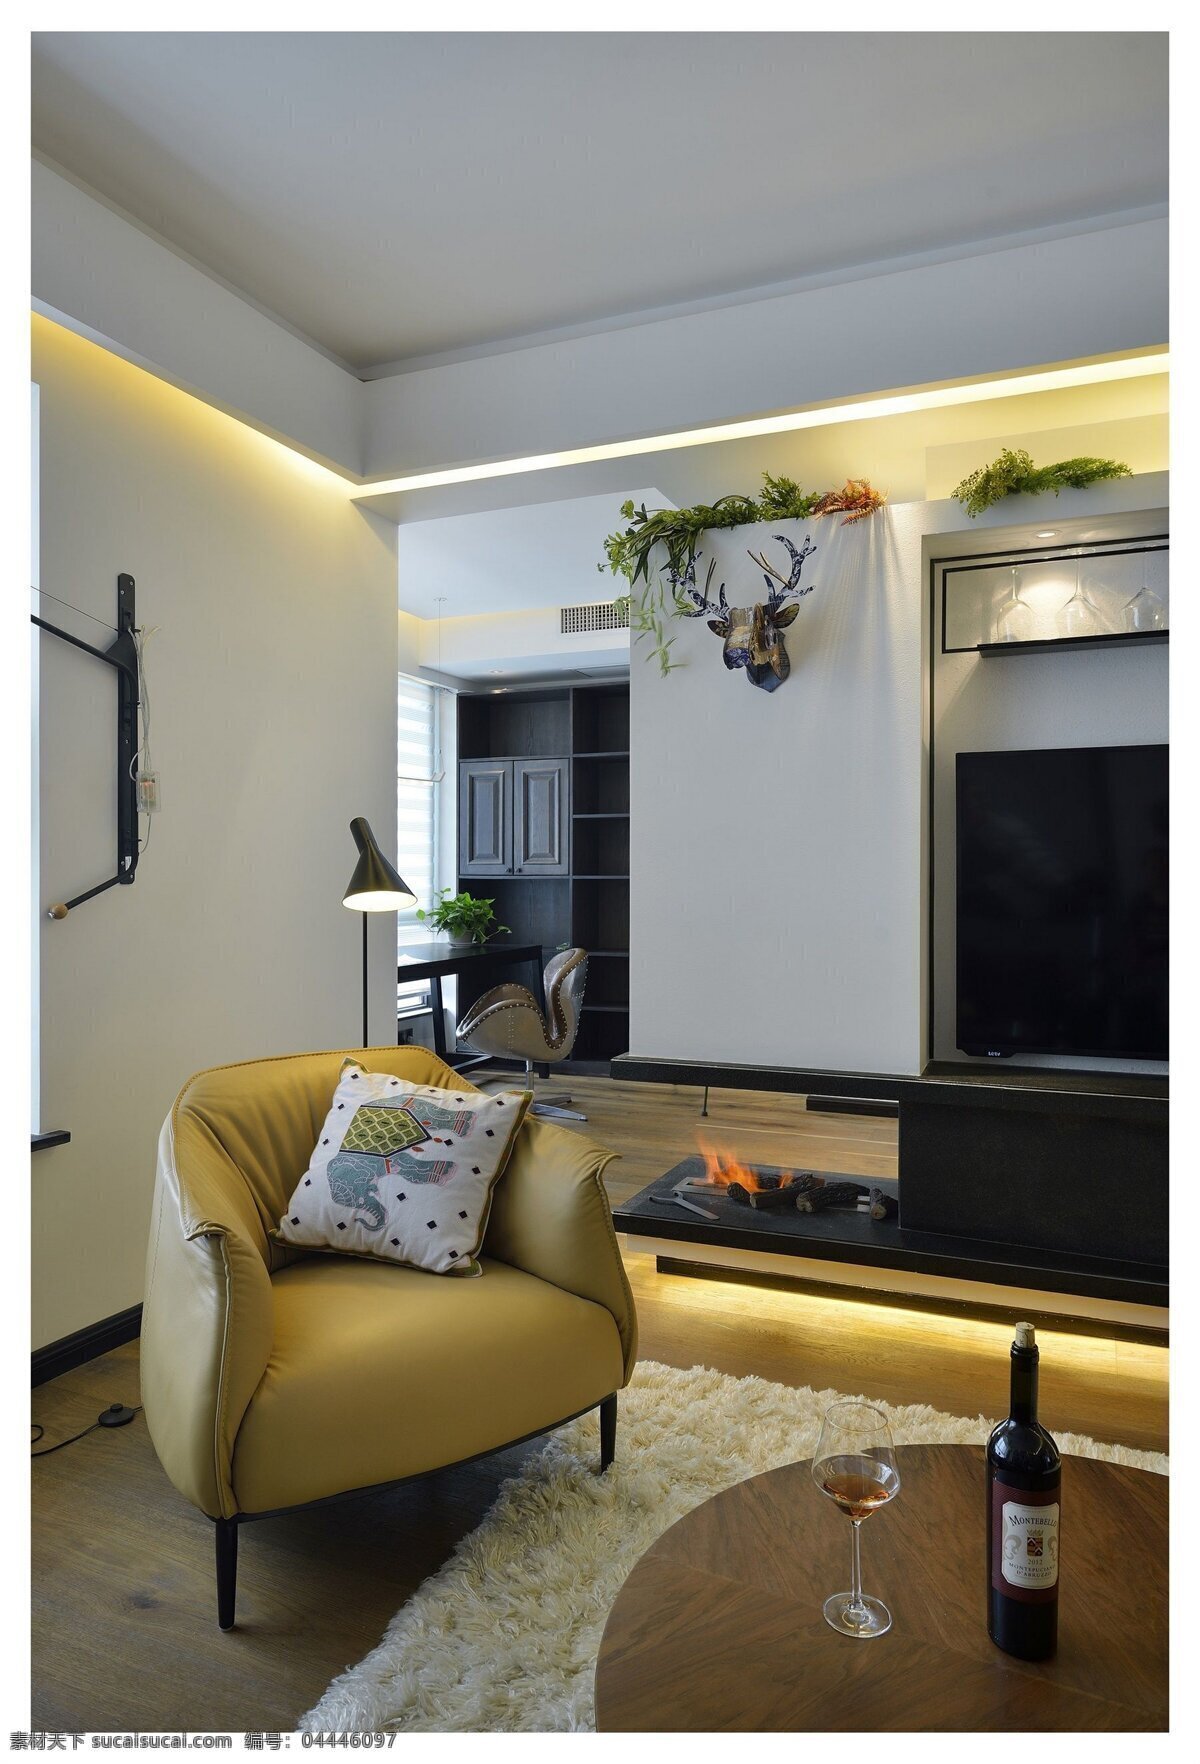 现代 简约 客厅 木地板 效果图 沙发 室内设计 时尚 装修实景图 家装 华丽 装修设计 家居 典雅 家居设计图